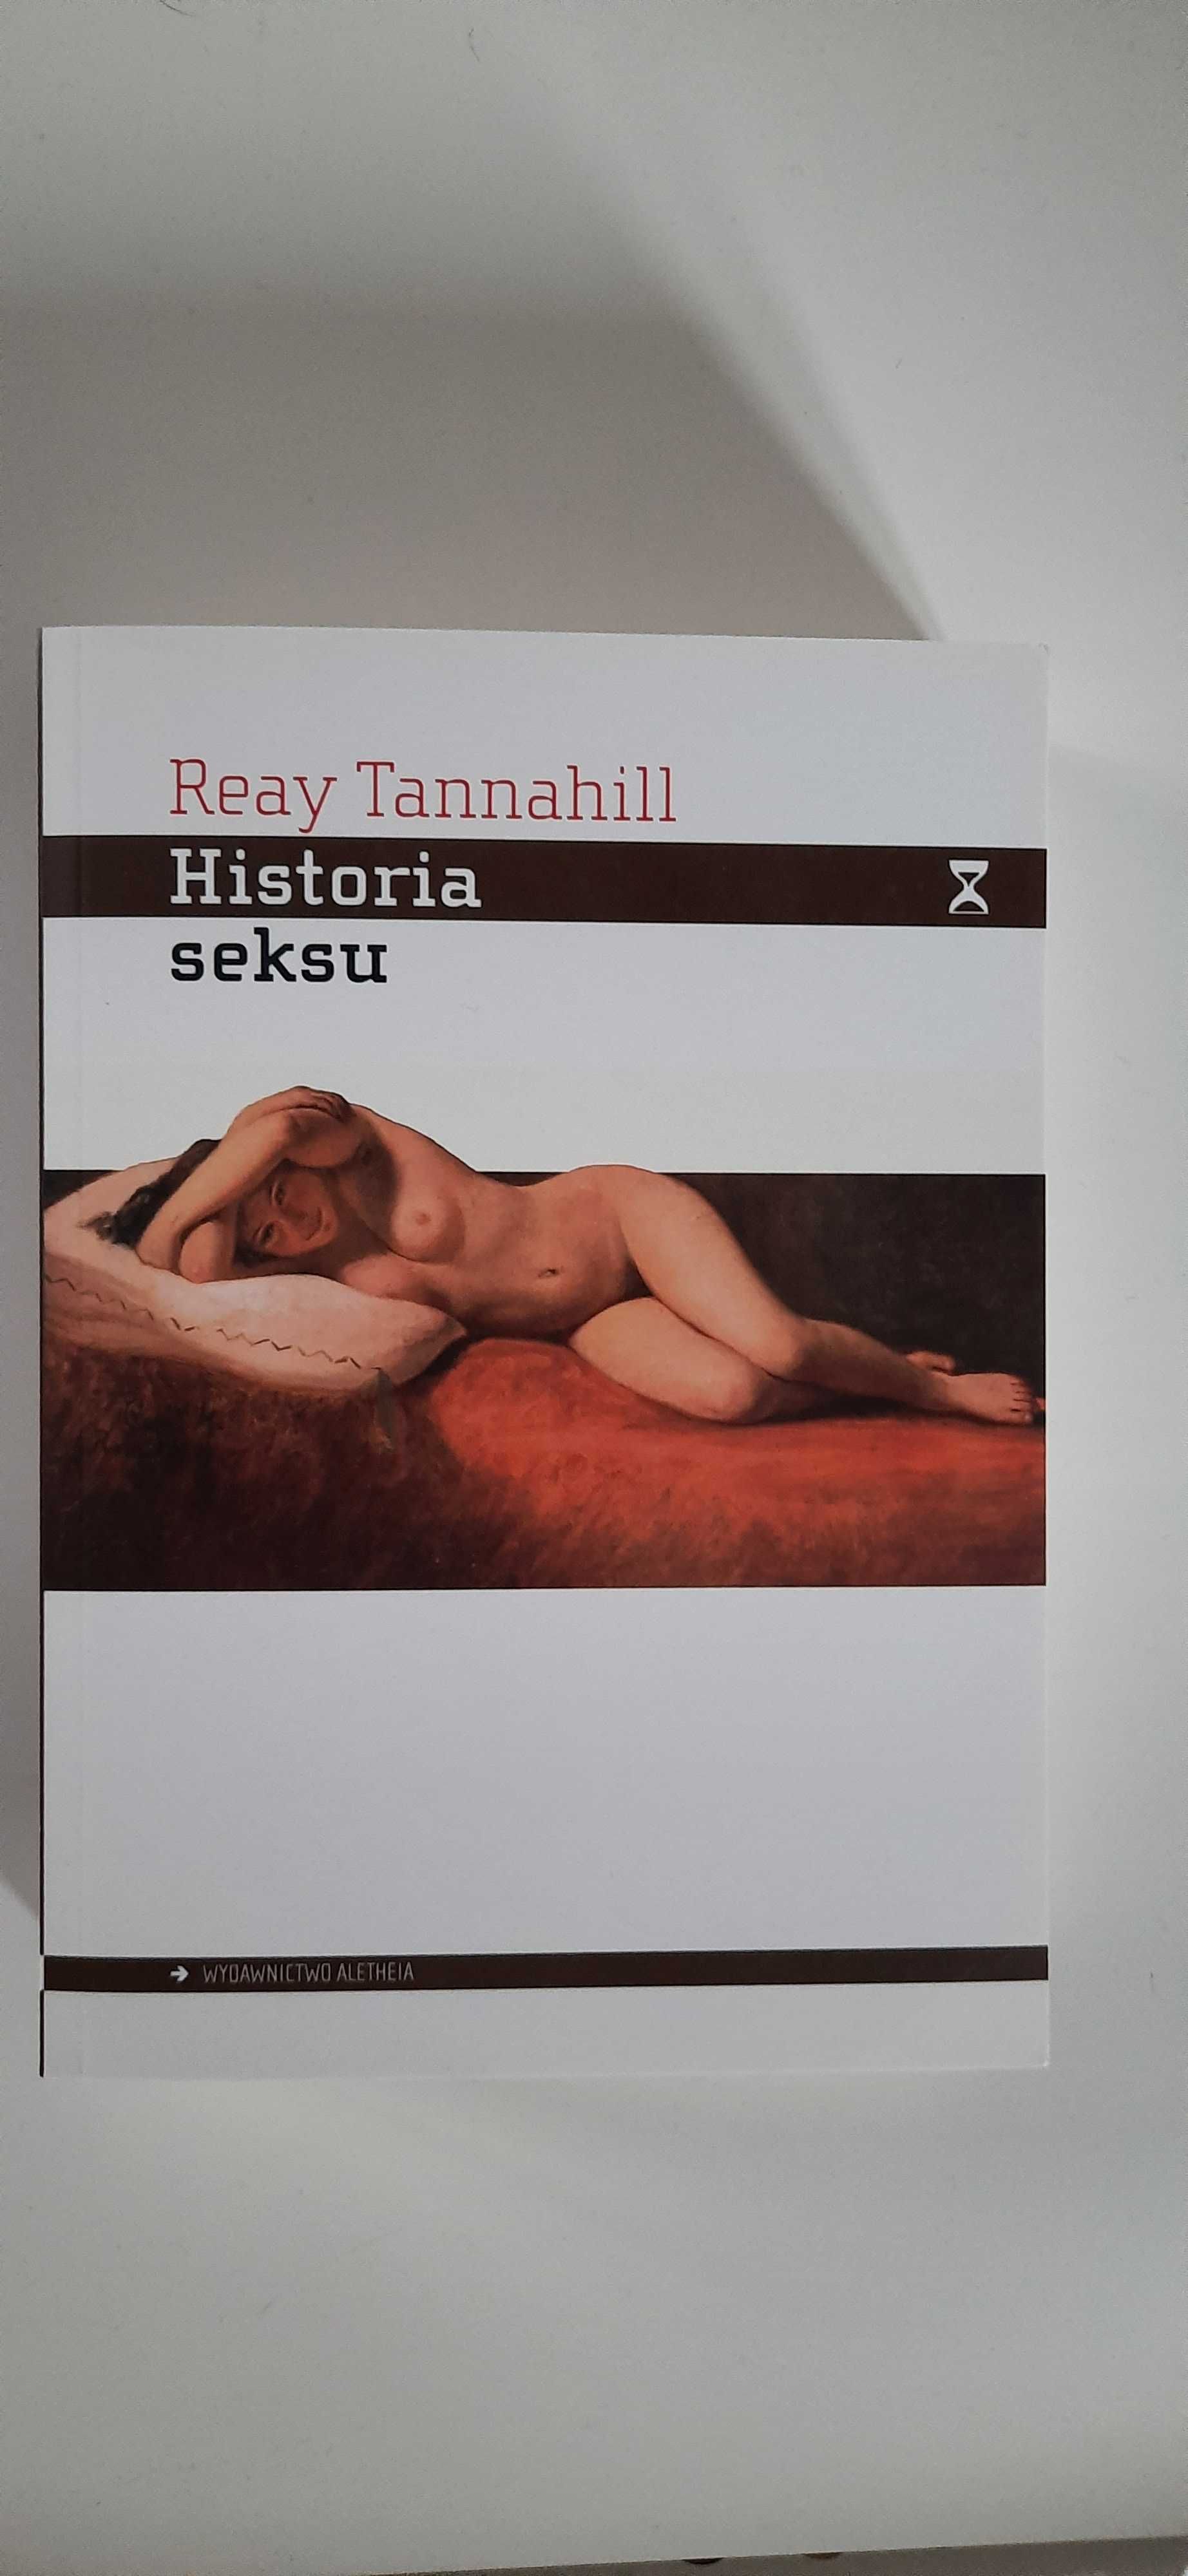 Reay Tannahill - Historia seksu